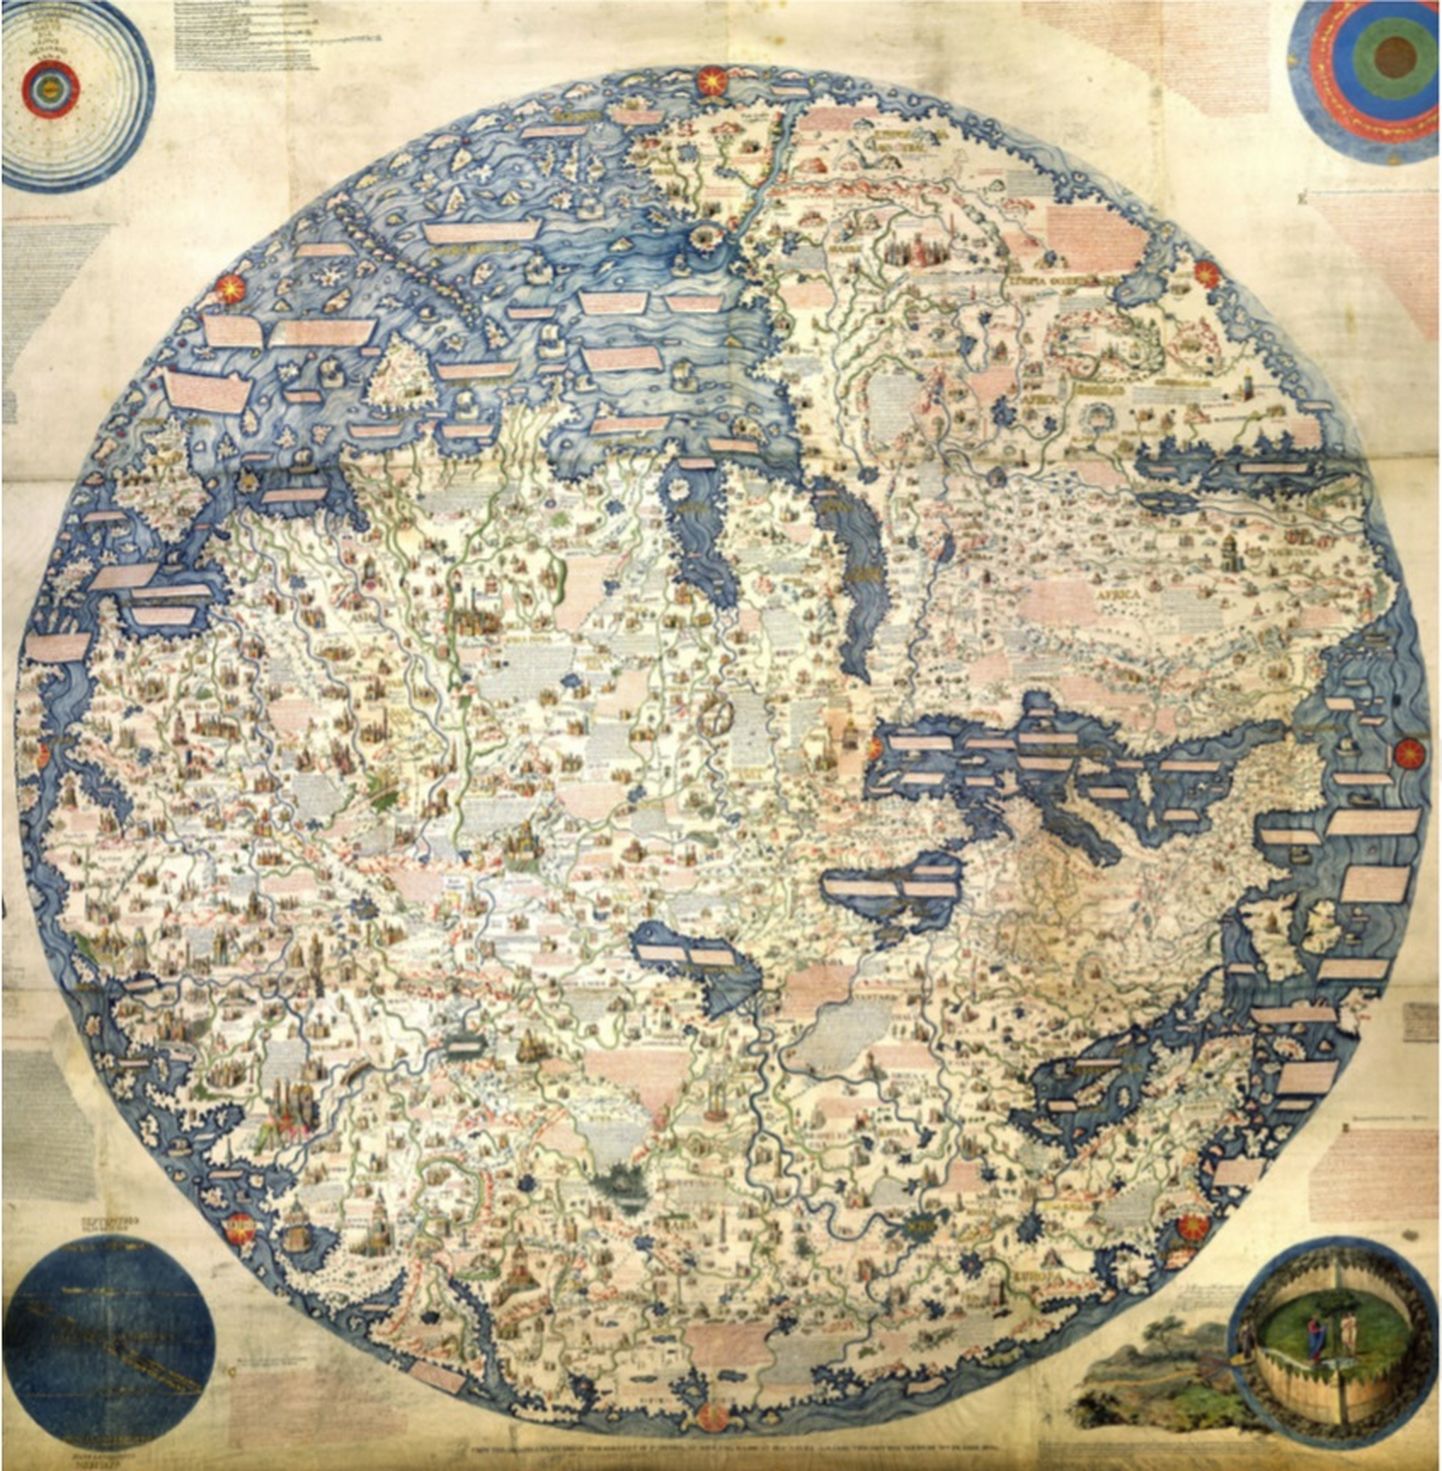 Fra Mauro maailmakaardi koopia aastast 1804. Veneetsia munk Fra Mauro (vend Mauro) koostas maailmakaardi (mappa mundi), mis võttis kokku suurema osa tolleaegseid geograafiaalaseid teadmisi ja sisaldas tuhandeid tekste ning illustratsioone. Kaart valmis umbes 1450. aastal, olles seni ilmunud maailmakaartidest kõige täpsem. 15. sajandi kompassid olid orienteeritud lõuna-põhjasuunas, seega asub lõuna kaardil põhjas.